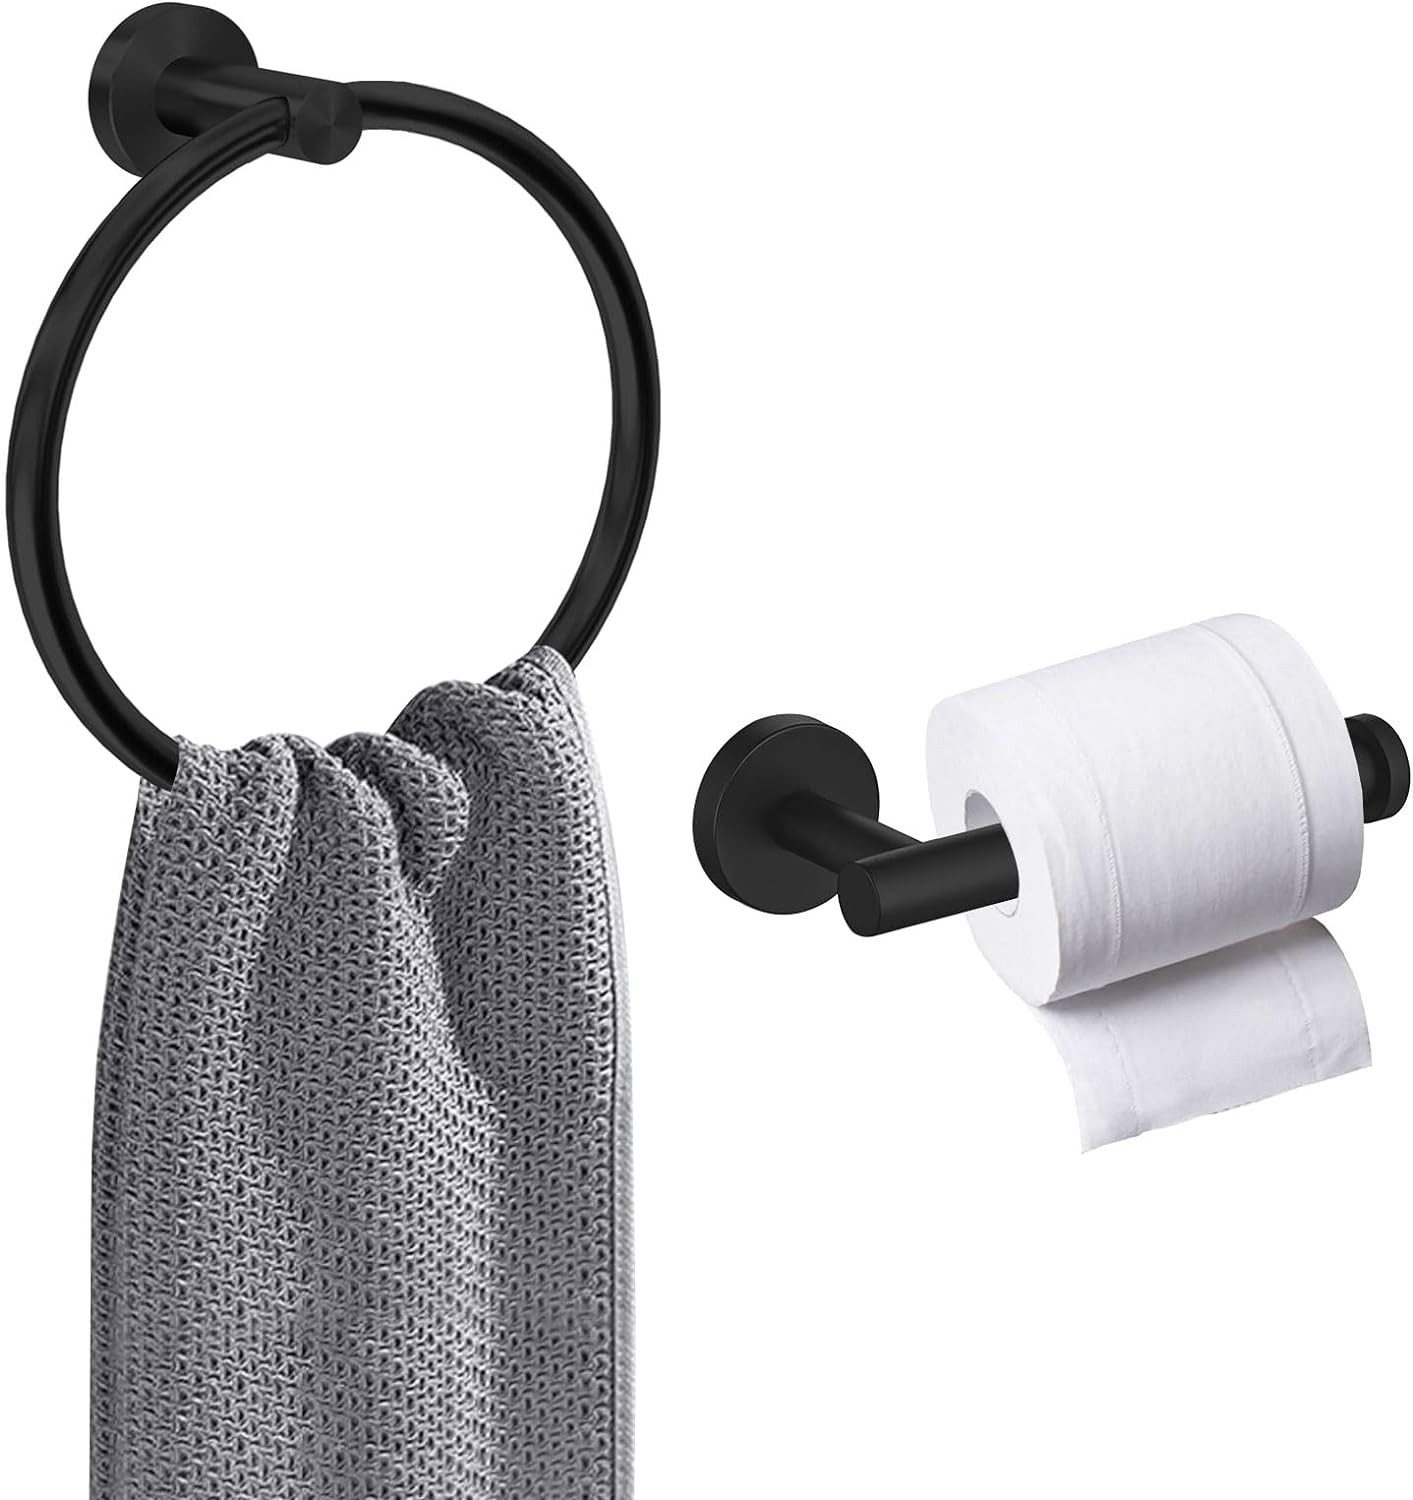 BlingBin Handtuchring 2Pcs Badezimmer Edelsthl Handtuchring und Toilettenpapierhalter, Für Bad, Küche, Büro, Schwarz Matt